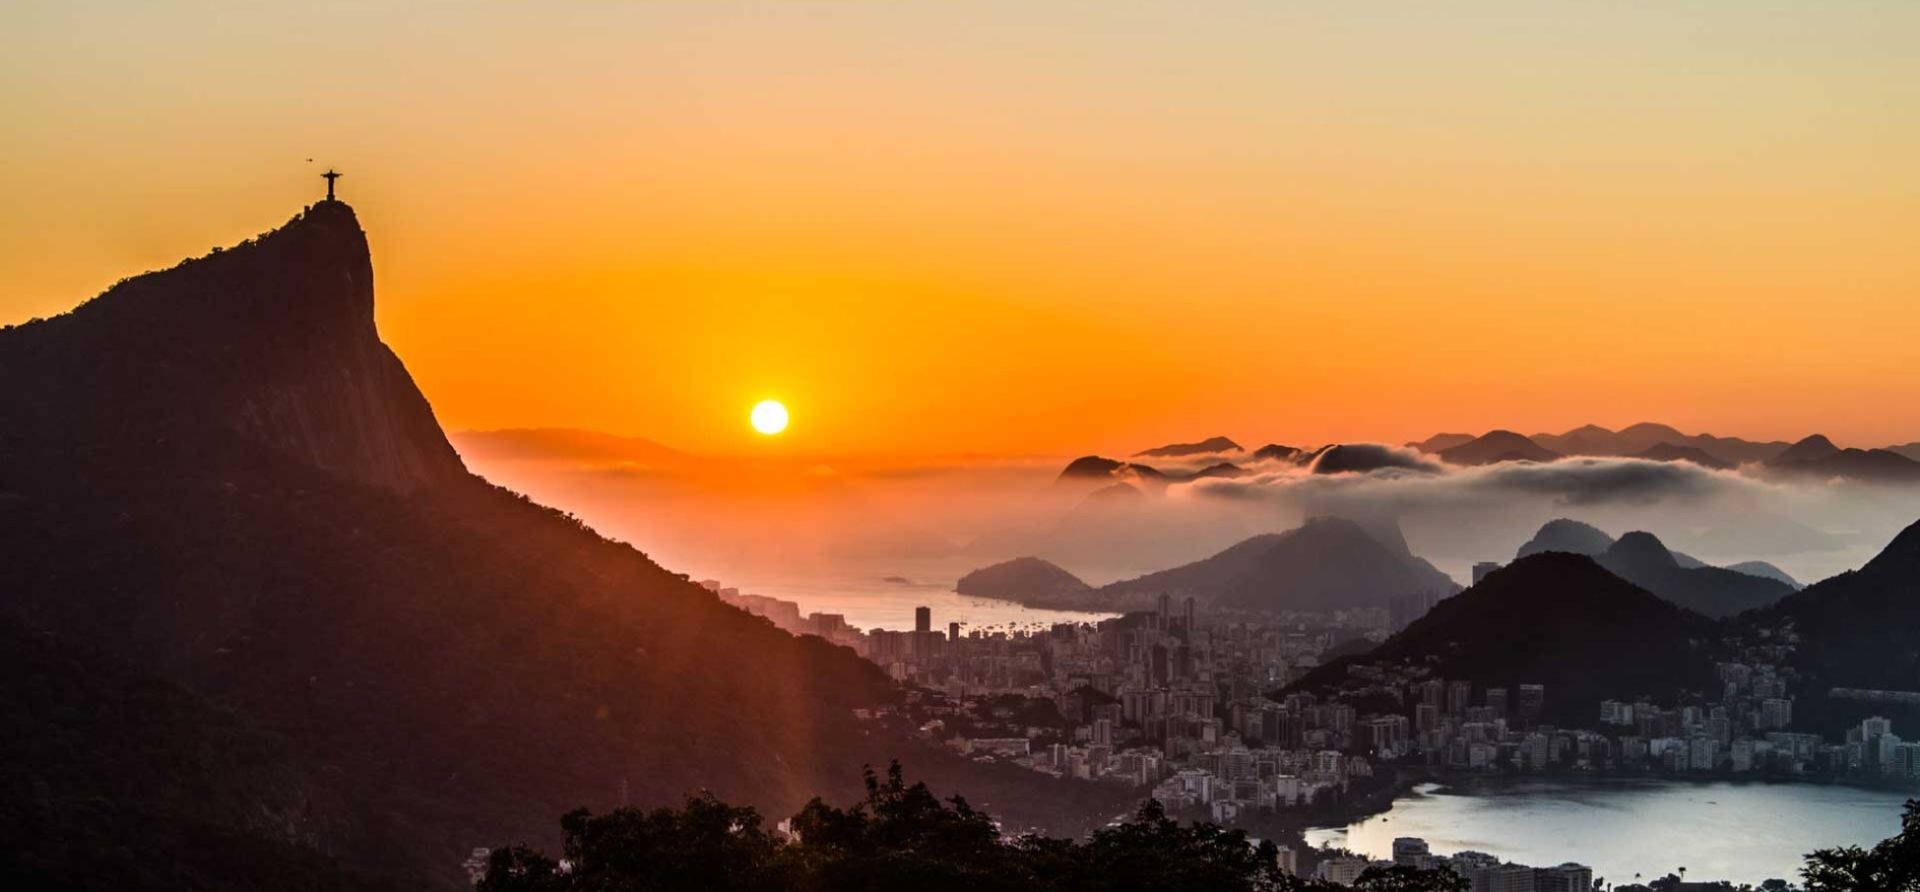 A Sunset In Rio de Janeiro